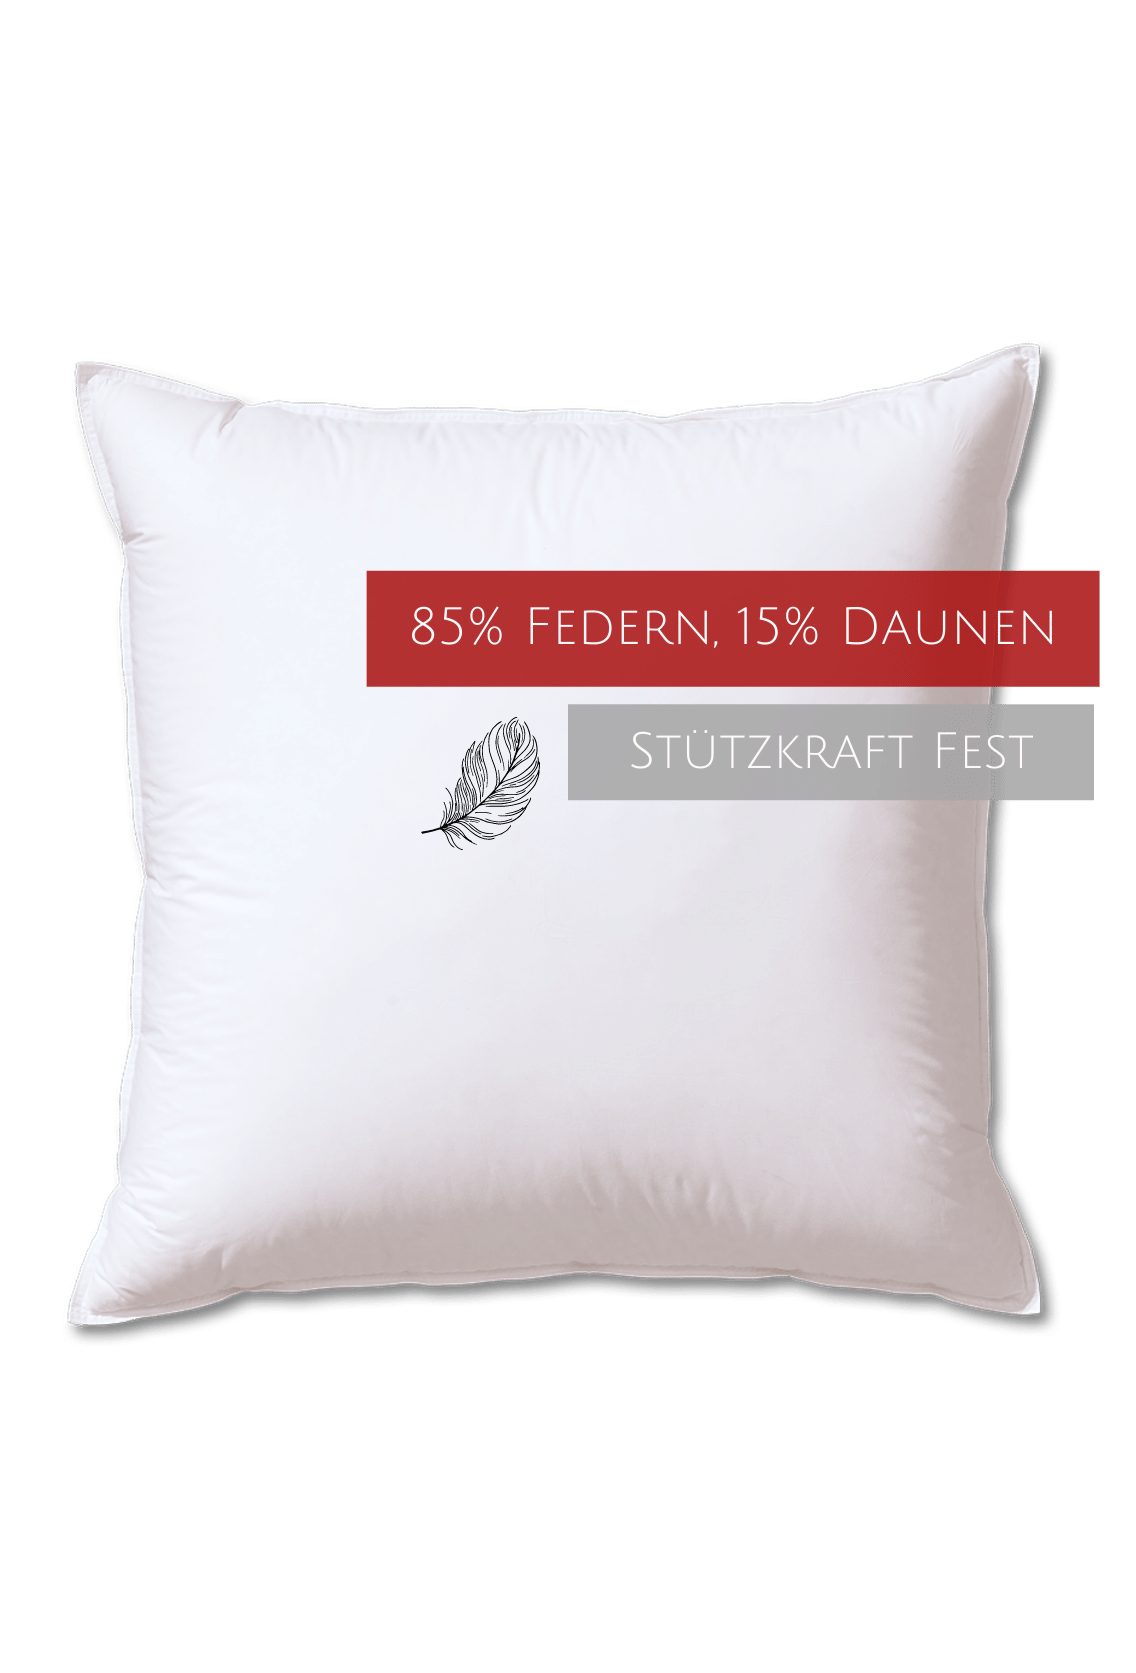 Kopfkissen Edition, Kauffmann, Füllung: 85% Federn, 15% Daunen, Bezug: 100% Baumwolle, allergikerfreundlich